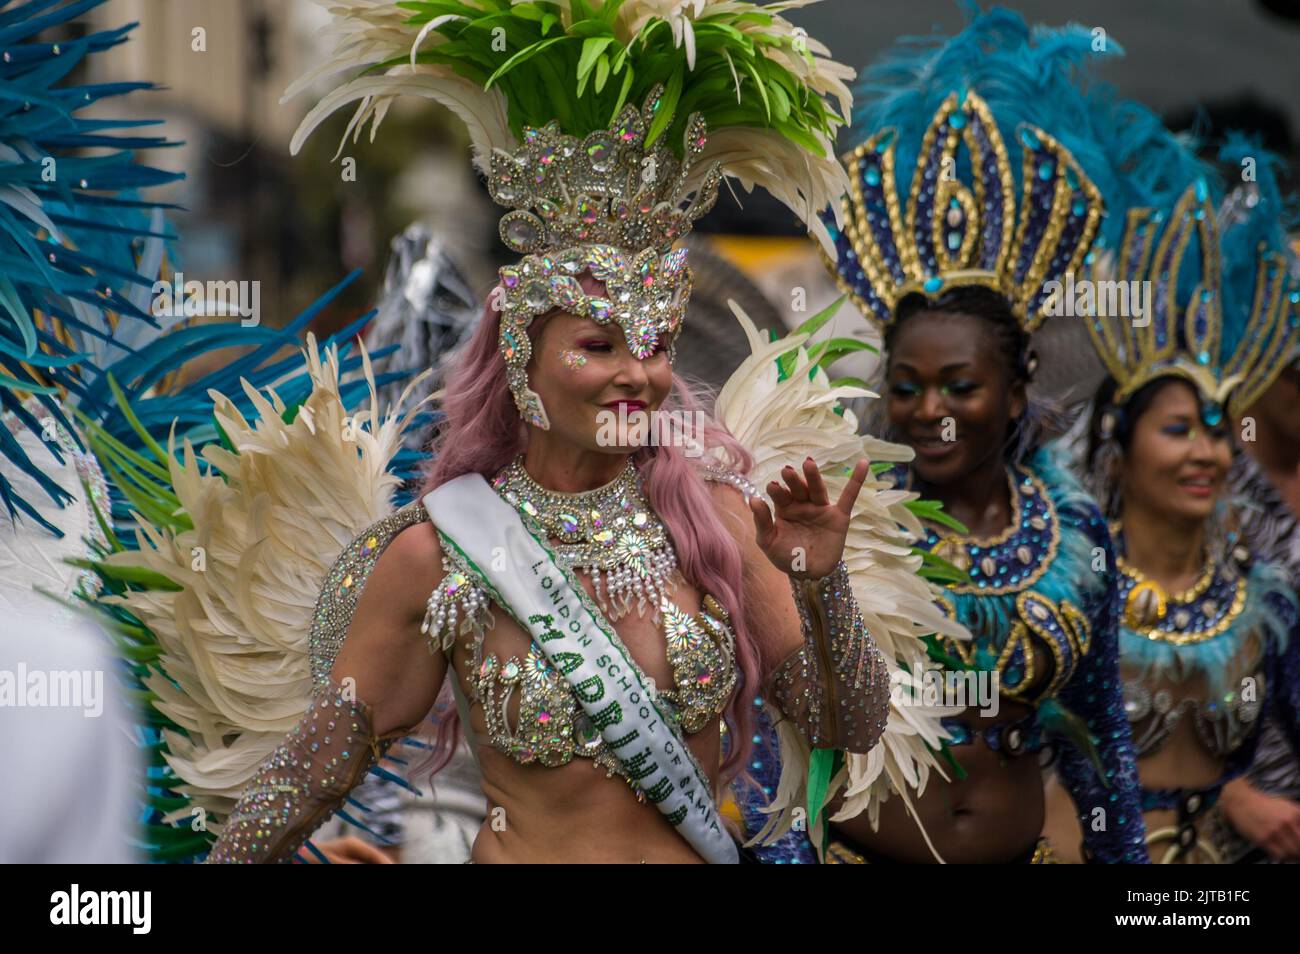 Tenue de samba traditionnelle Banque de photographies et d'images à haute  résolution - Alamy